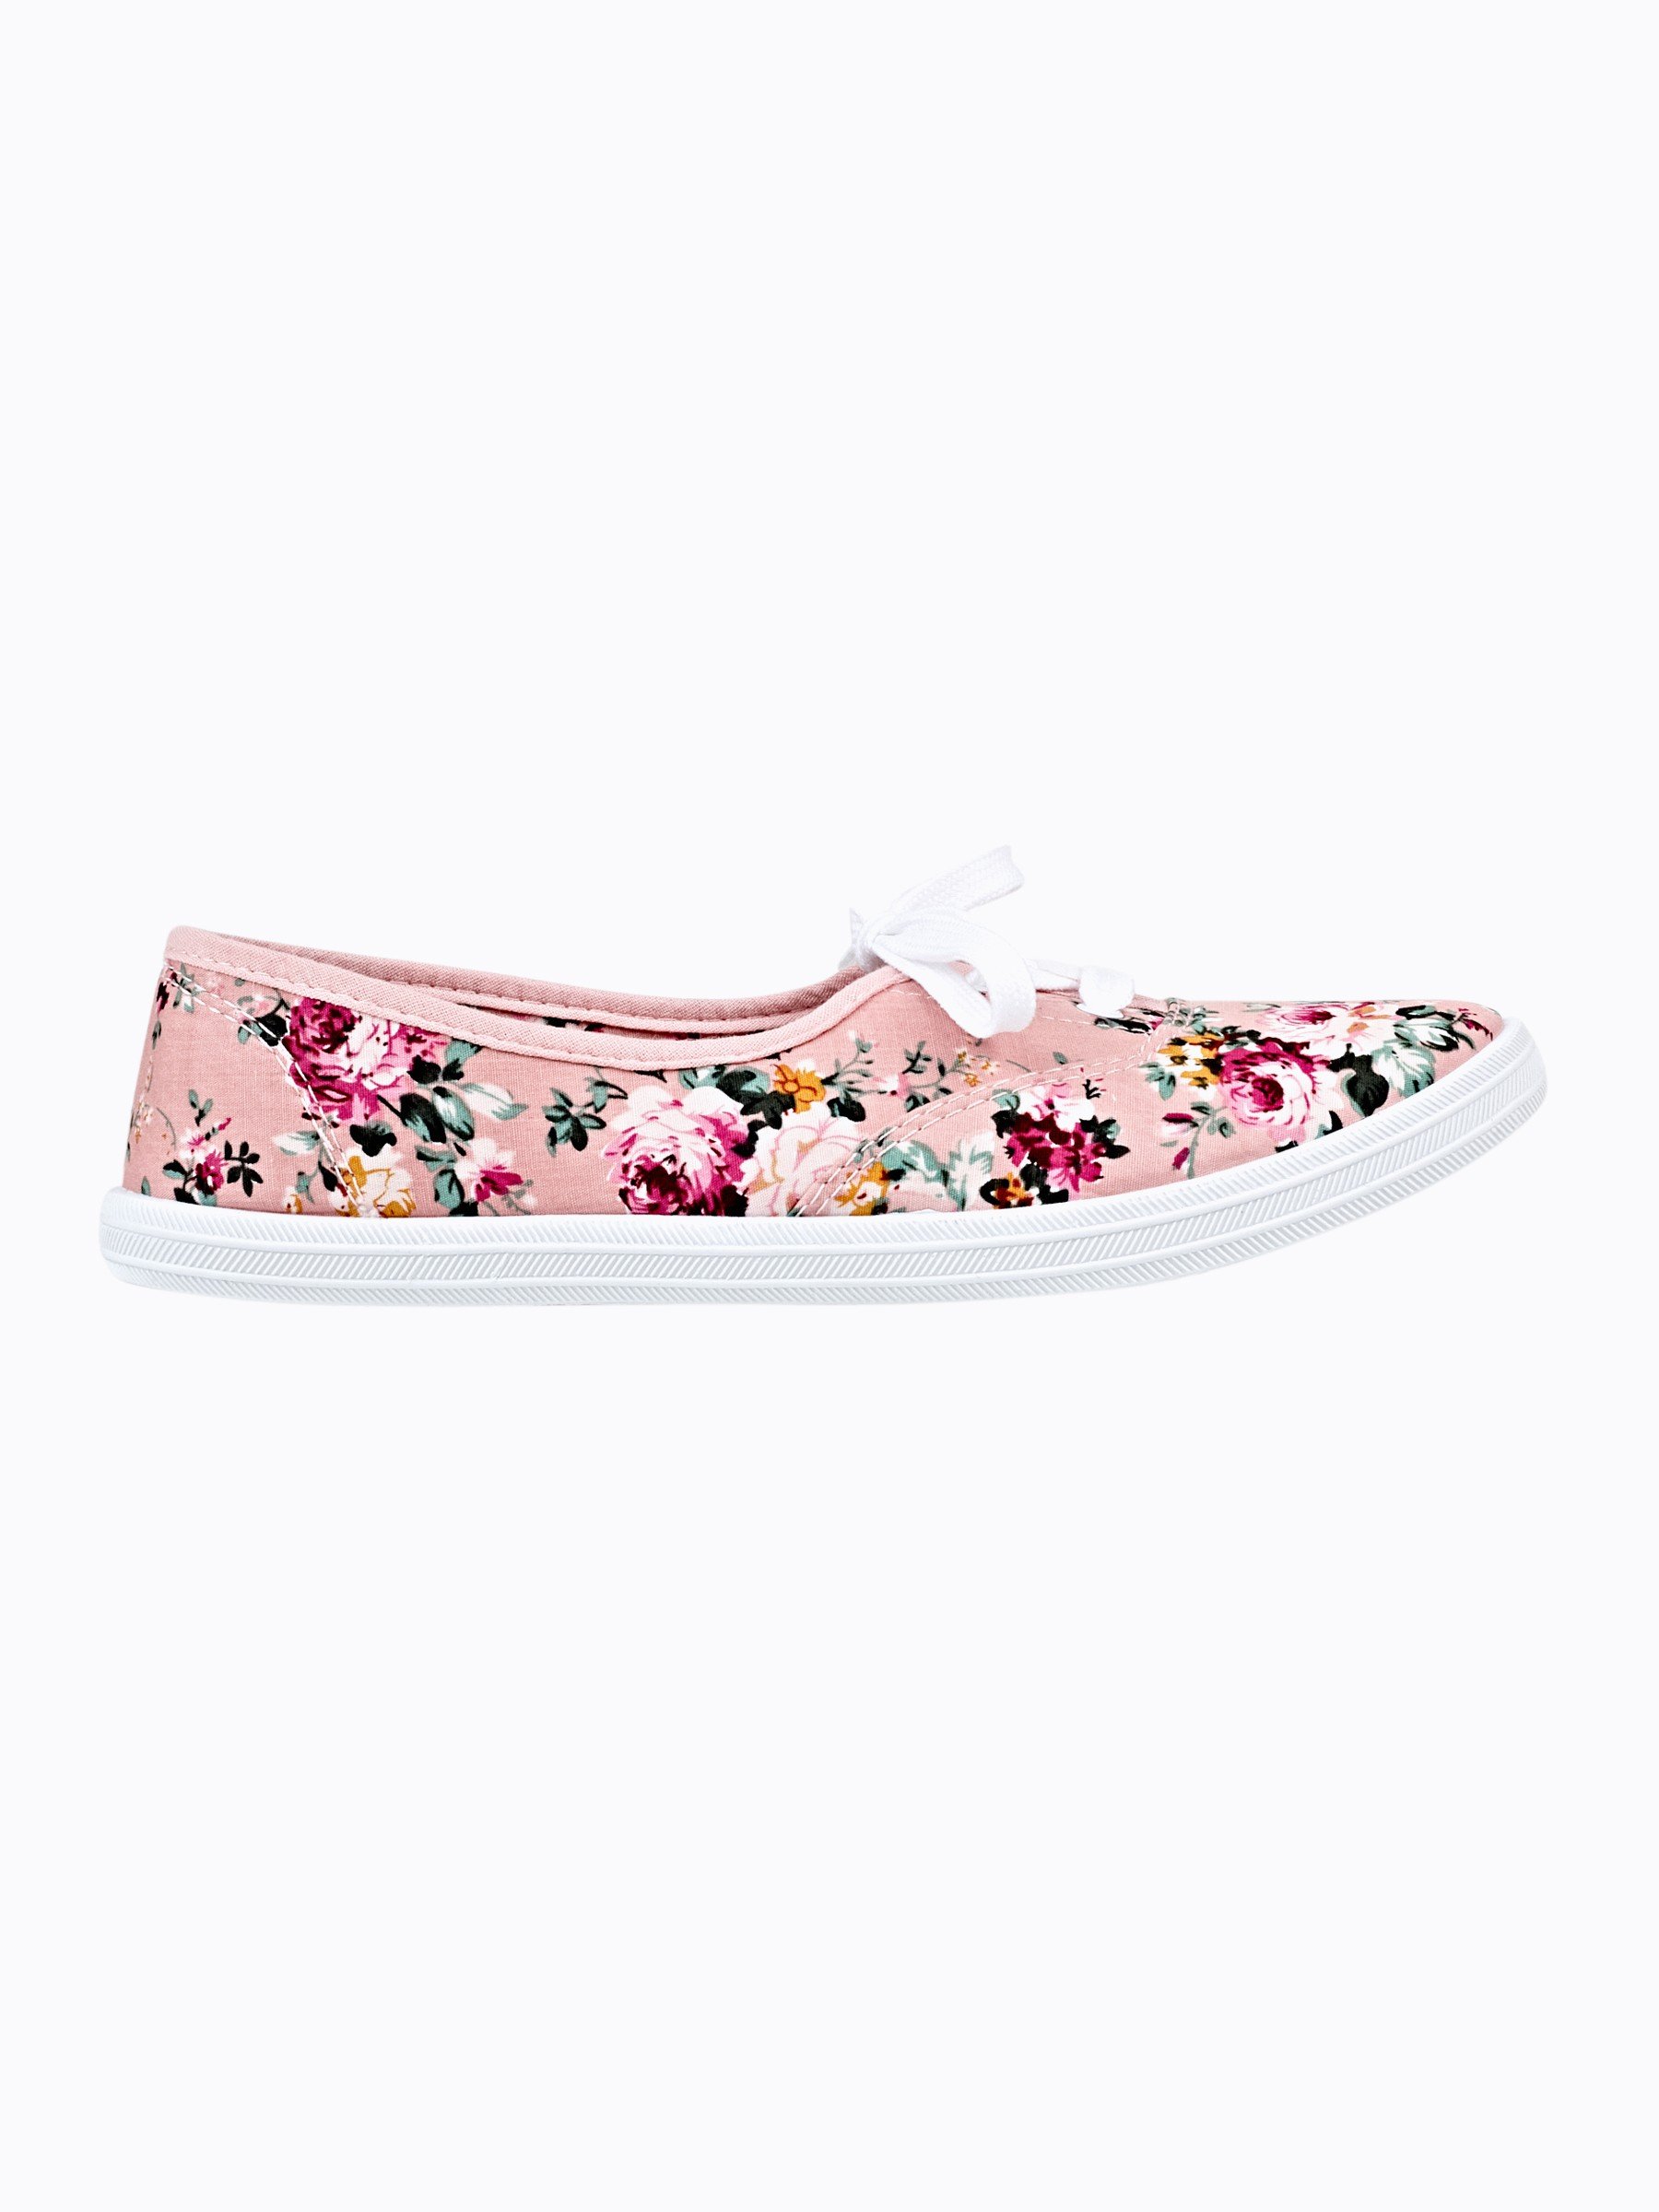 floral plimsoll shoes